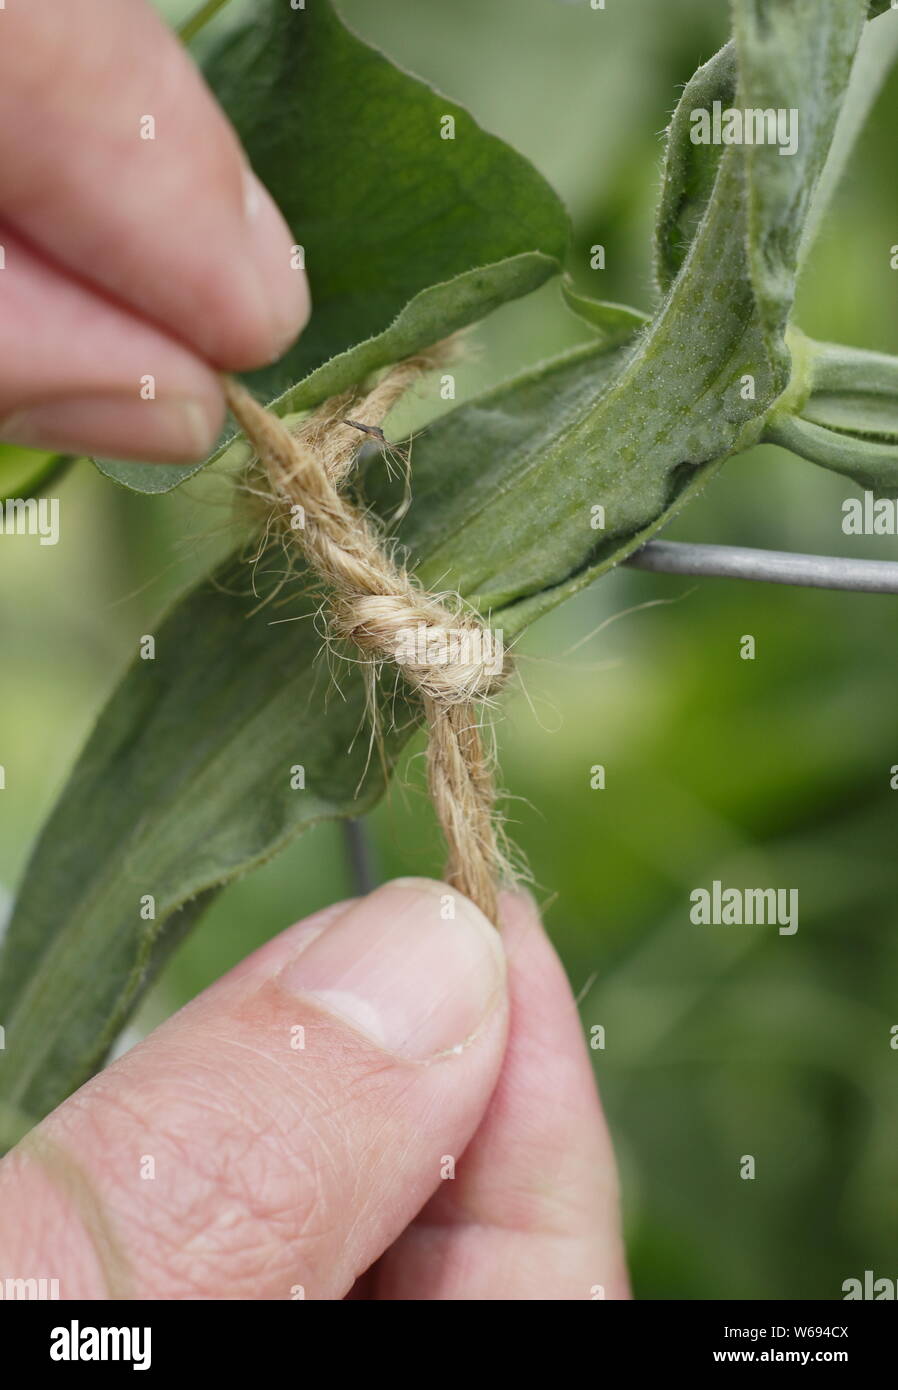 Lathyrus Odoratus. Binden im Sweet pea plant Starke, gerade das Wachstum zu fördern und zu unterstützen. Stockfoto